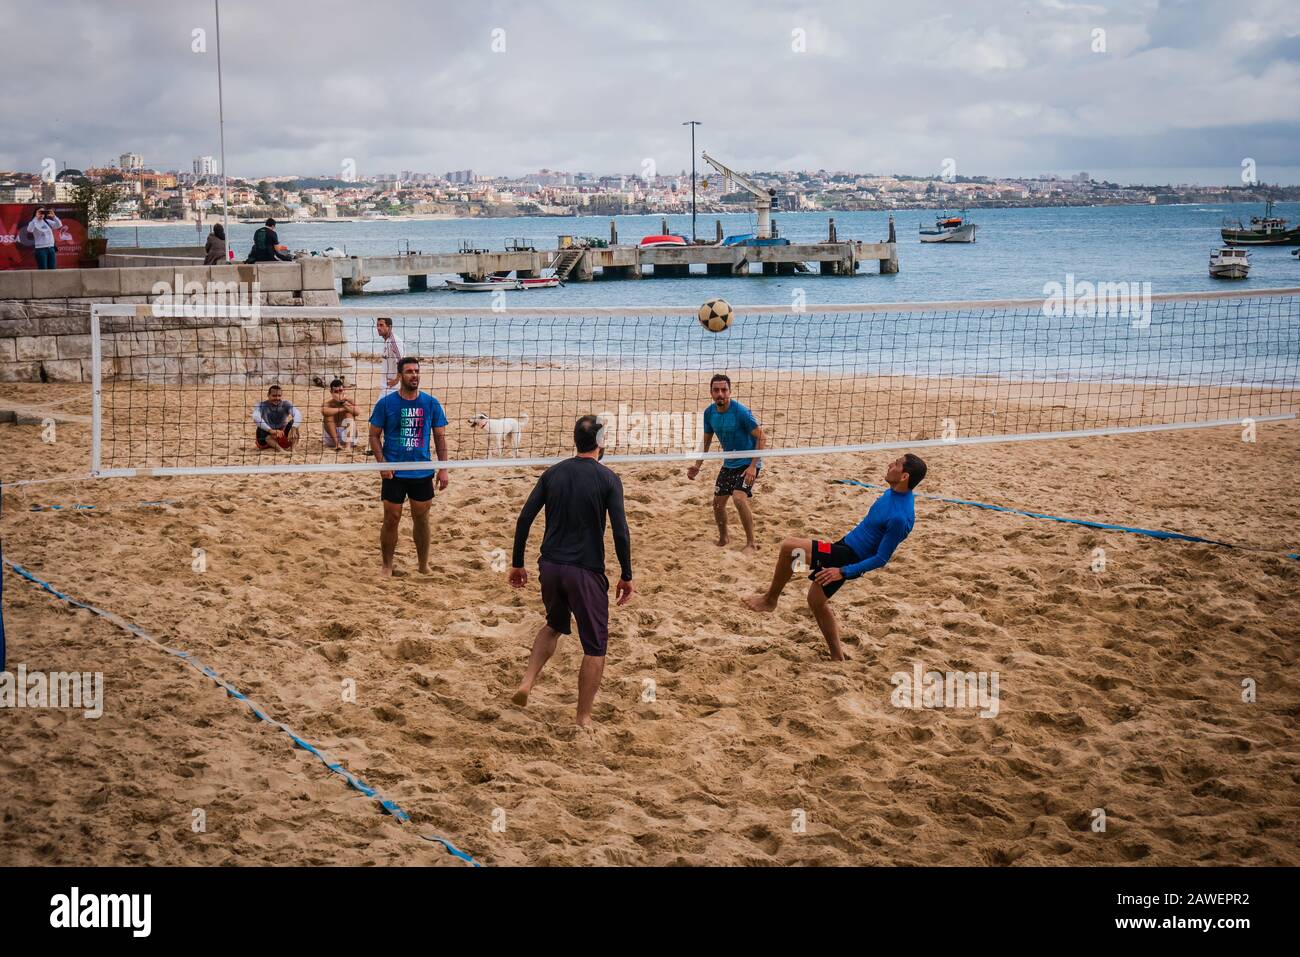 Les hommes jouant à la marche de la plage Praia da Ribeira, la plage principale de Cascais, qui fait face à la place centrale des villes et surplombe le port de pêche Banque D'Images